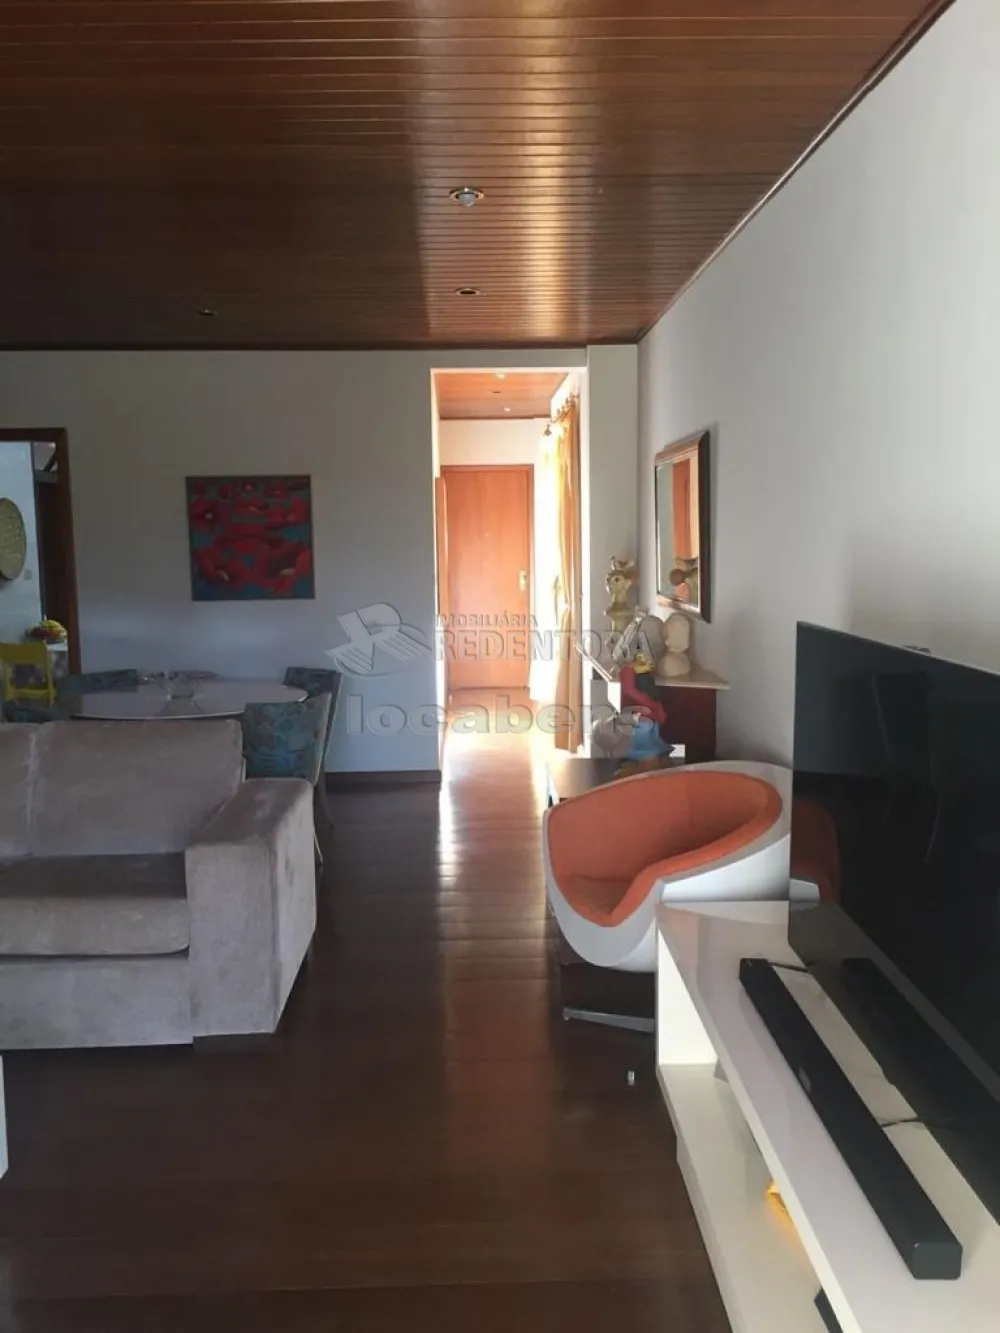 Comprar Apartamento / Padrão em São José do Rio Preto R$ 500.000,00 - Foto 18